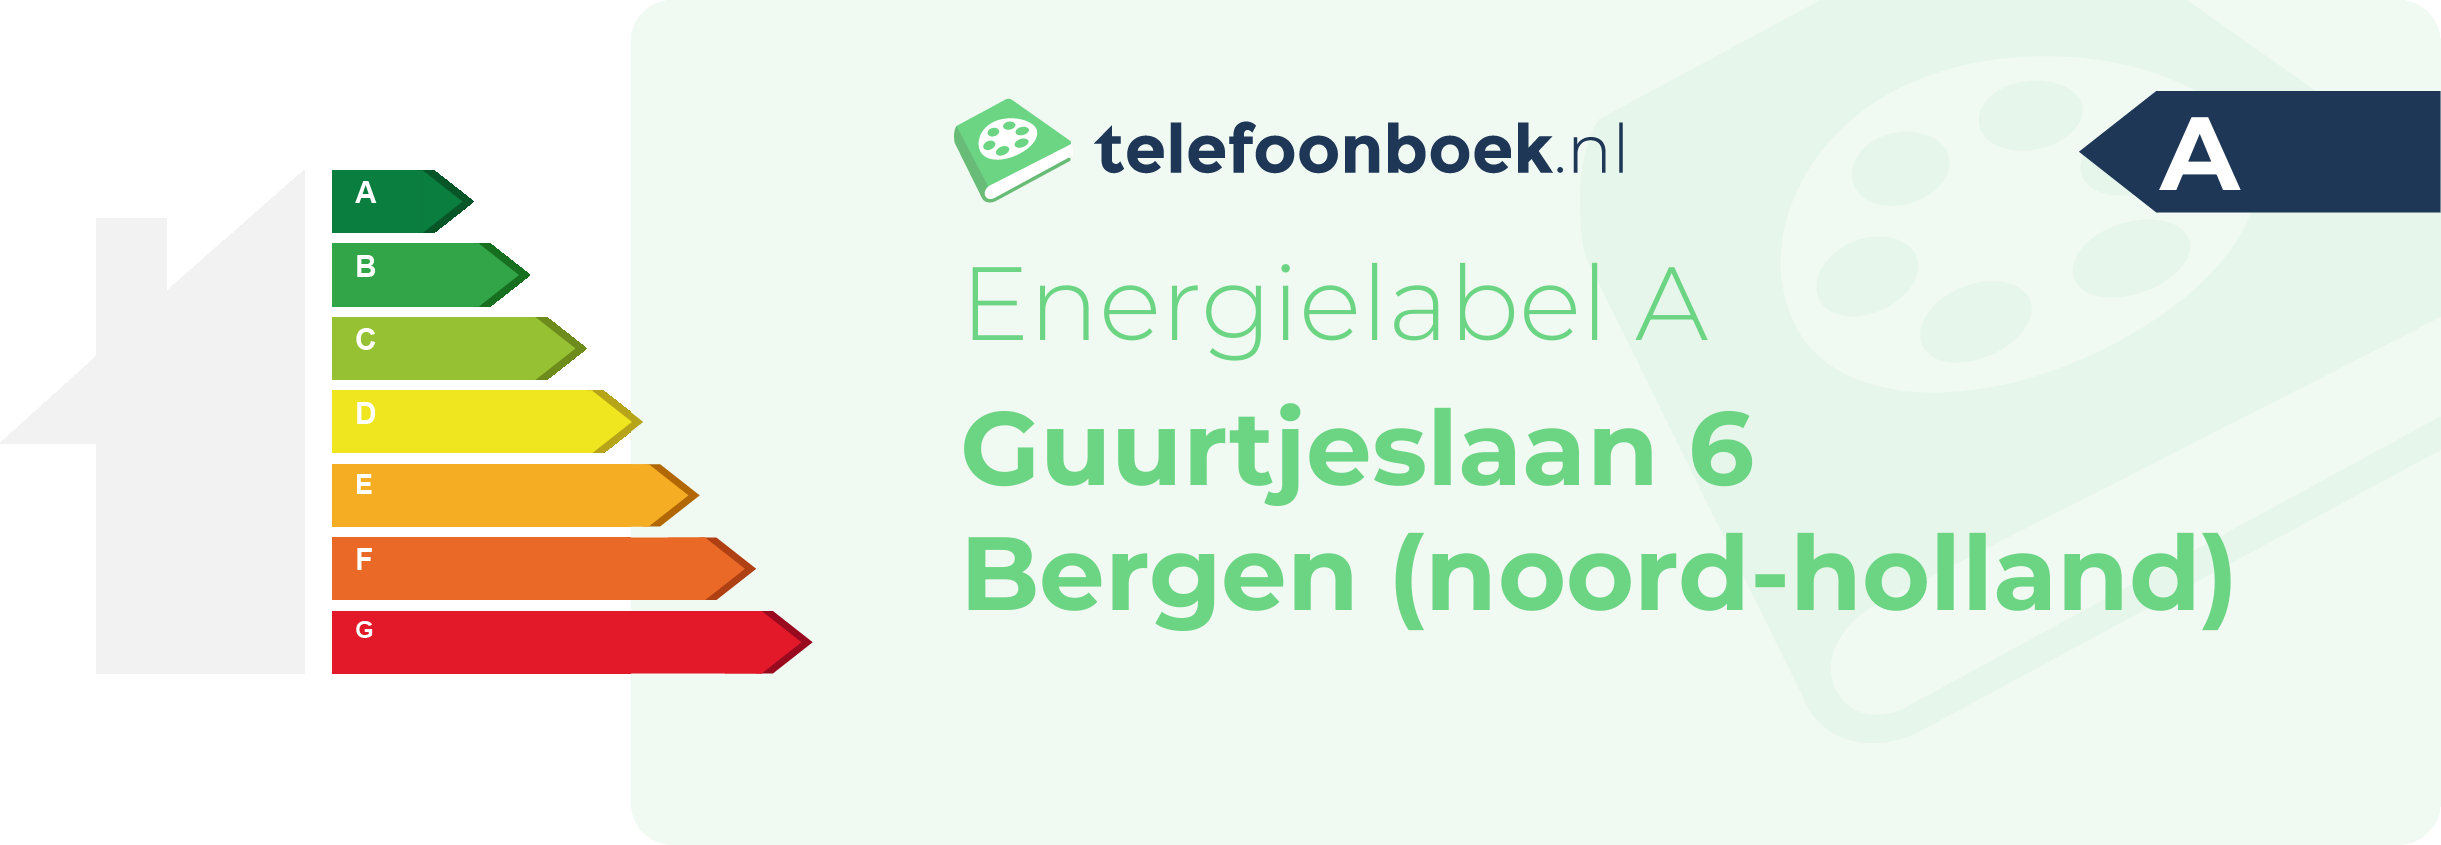 Energielabel Guurtjeslaan 6 Bergen (Noord-Holland)